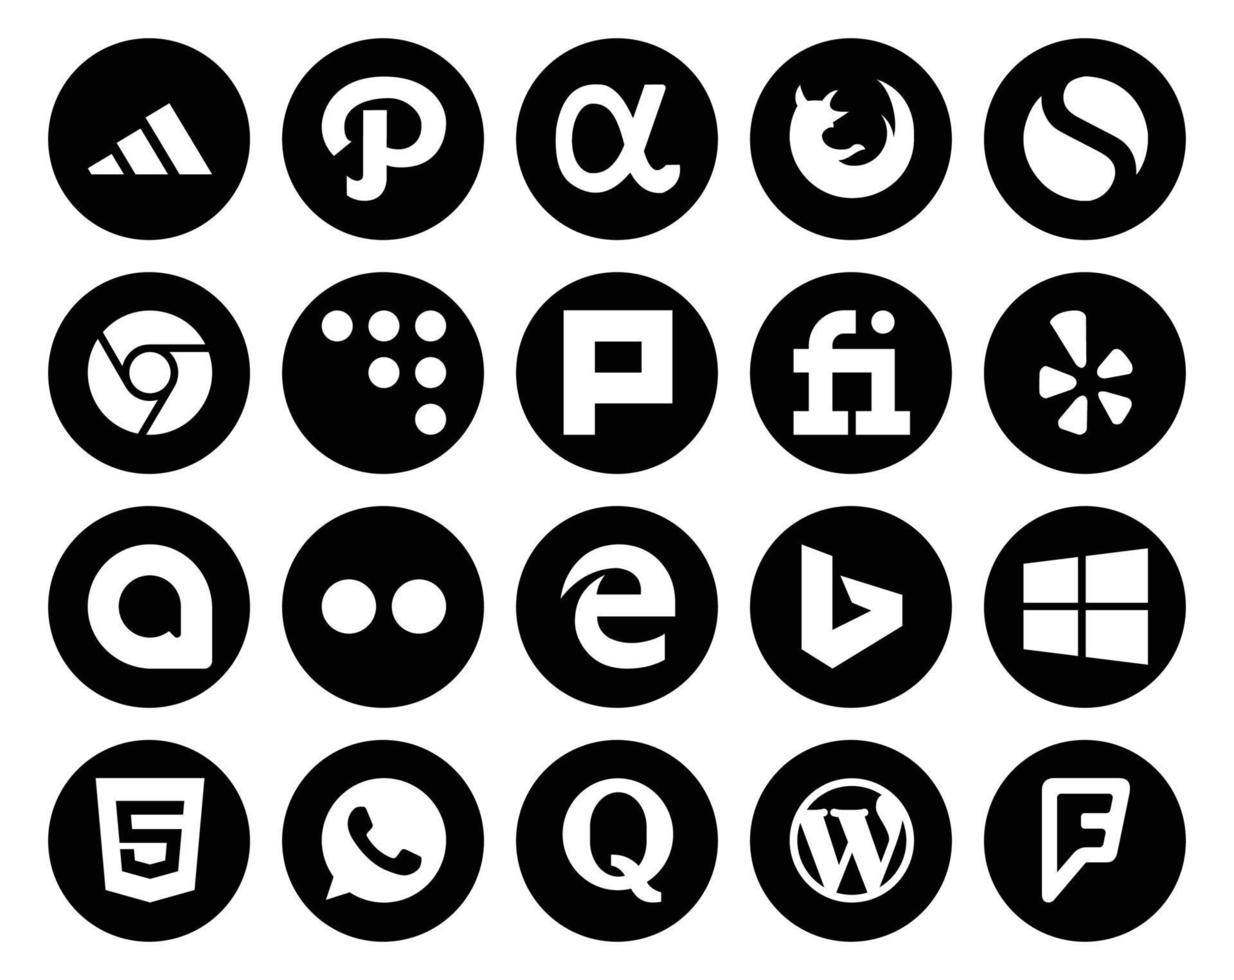 Pack de 20 icônes de médias sociaux, y compris WhatsApp Windows Plurk Bing Flickr vecteur